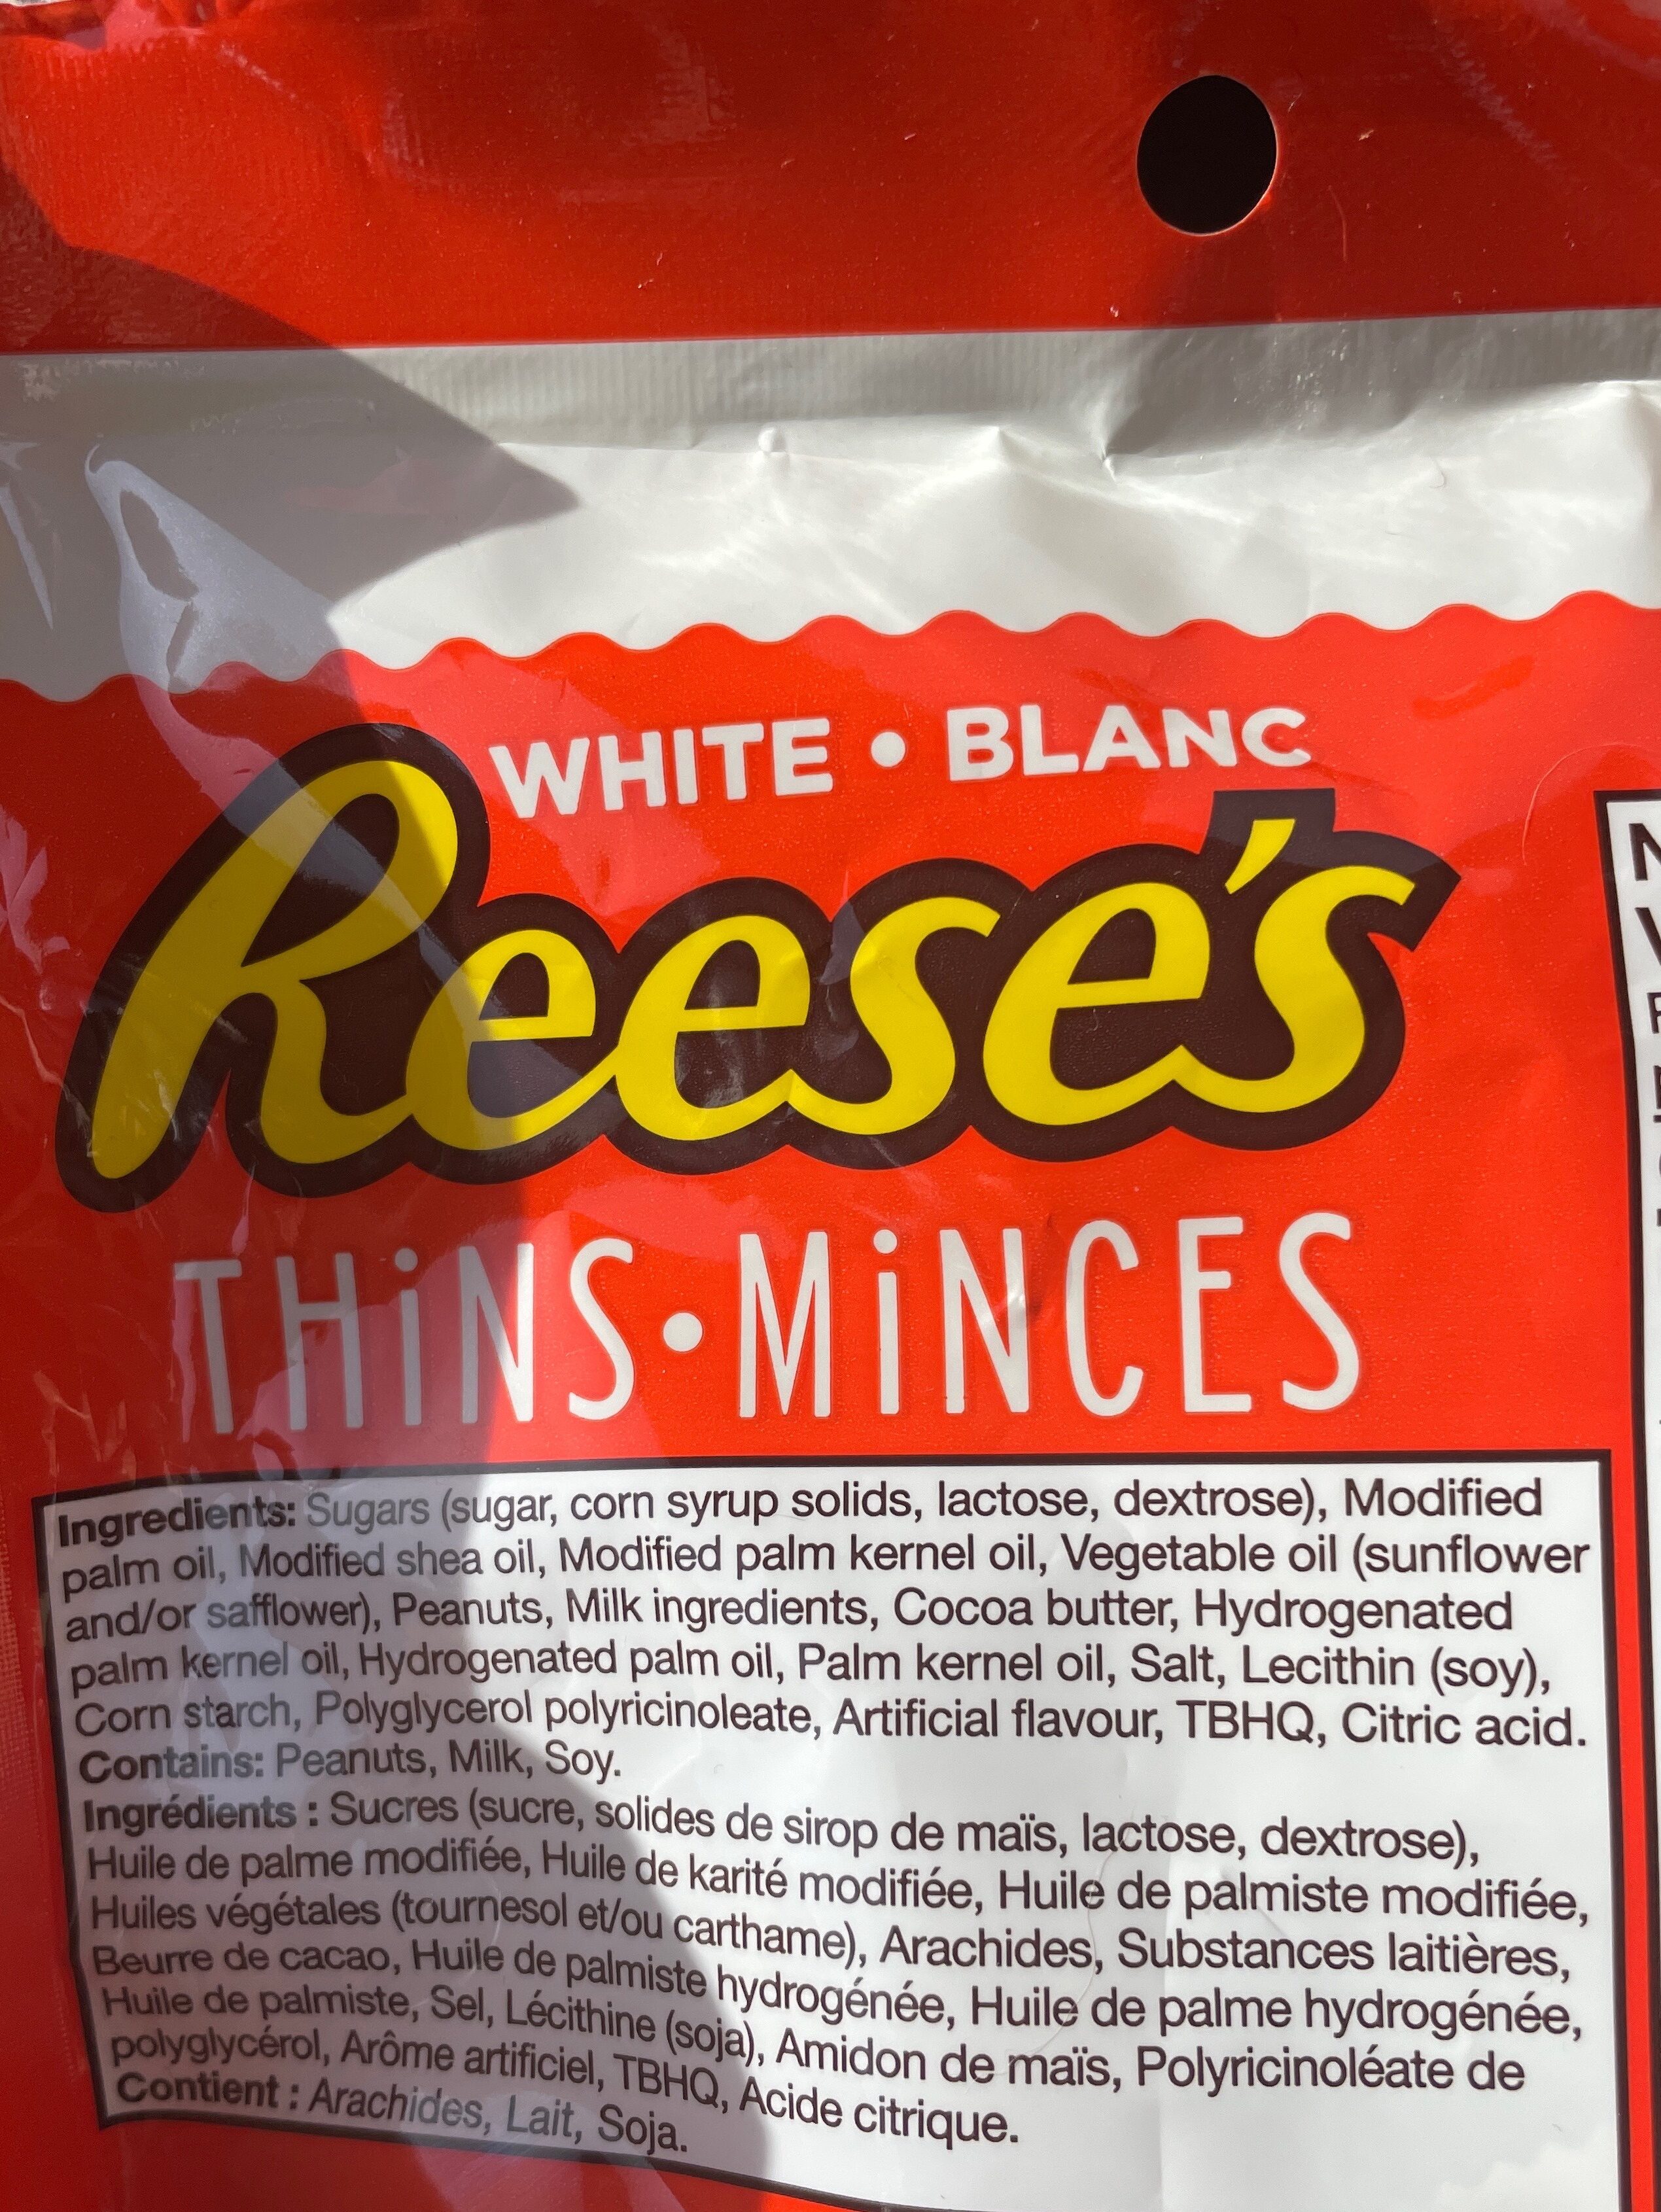 Reese's blanc minces - Ingrédients